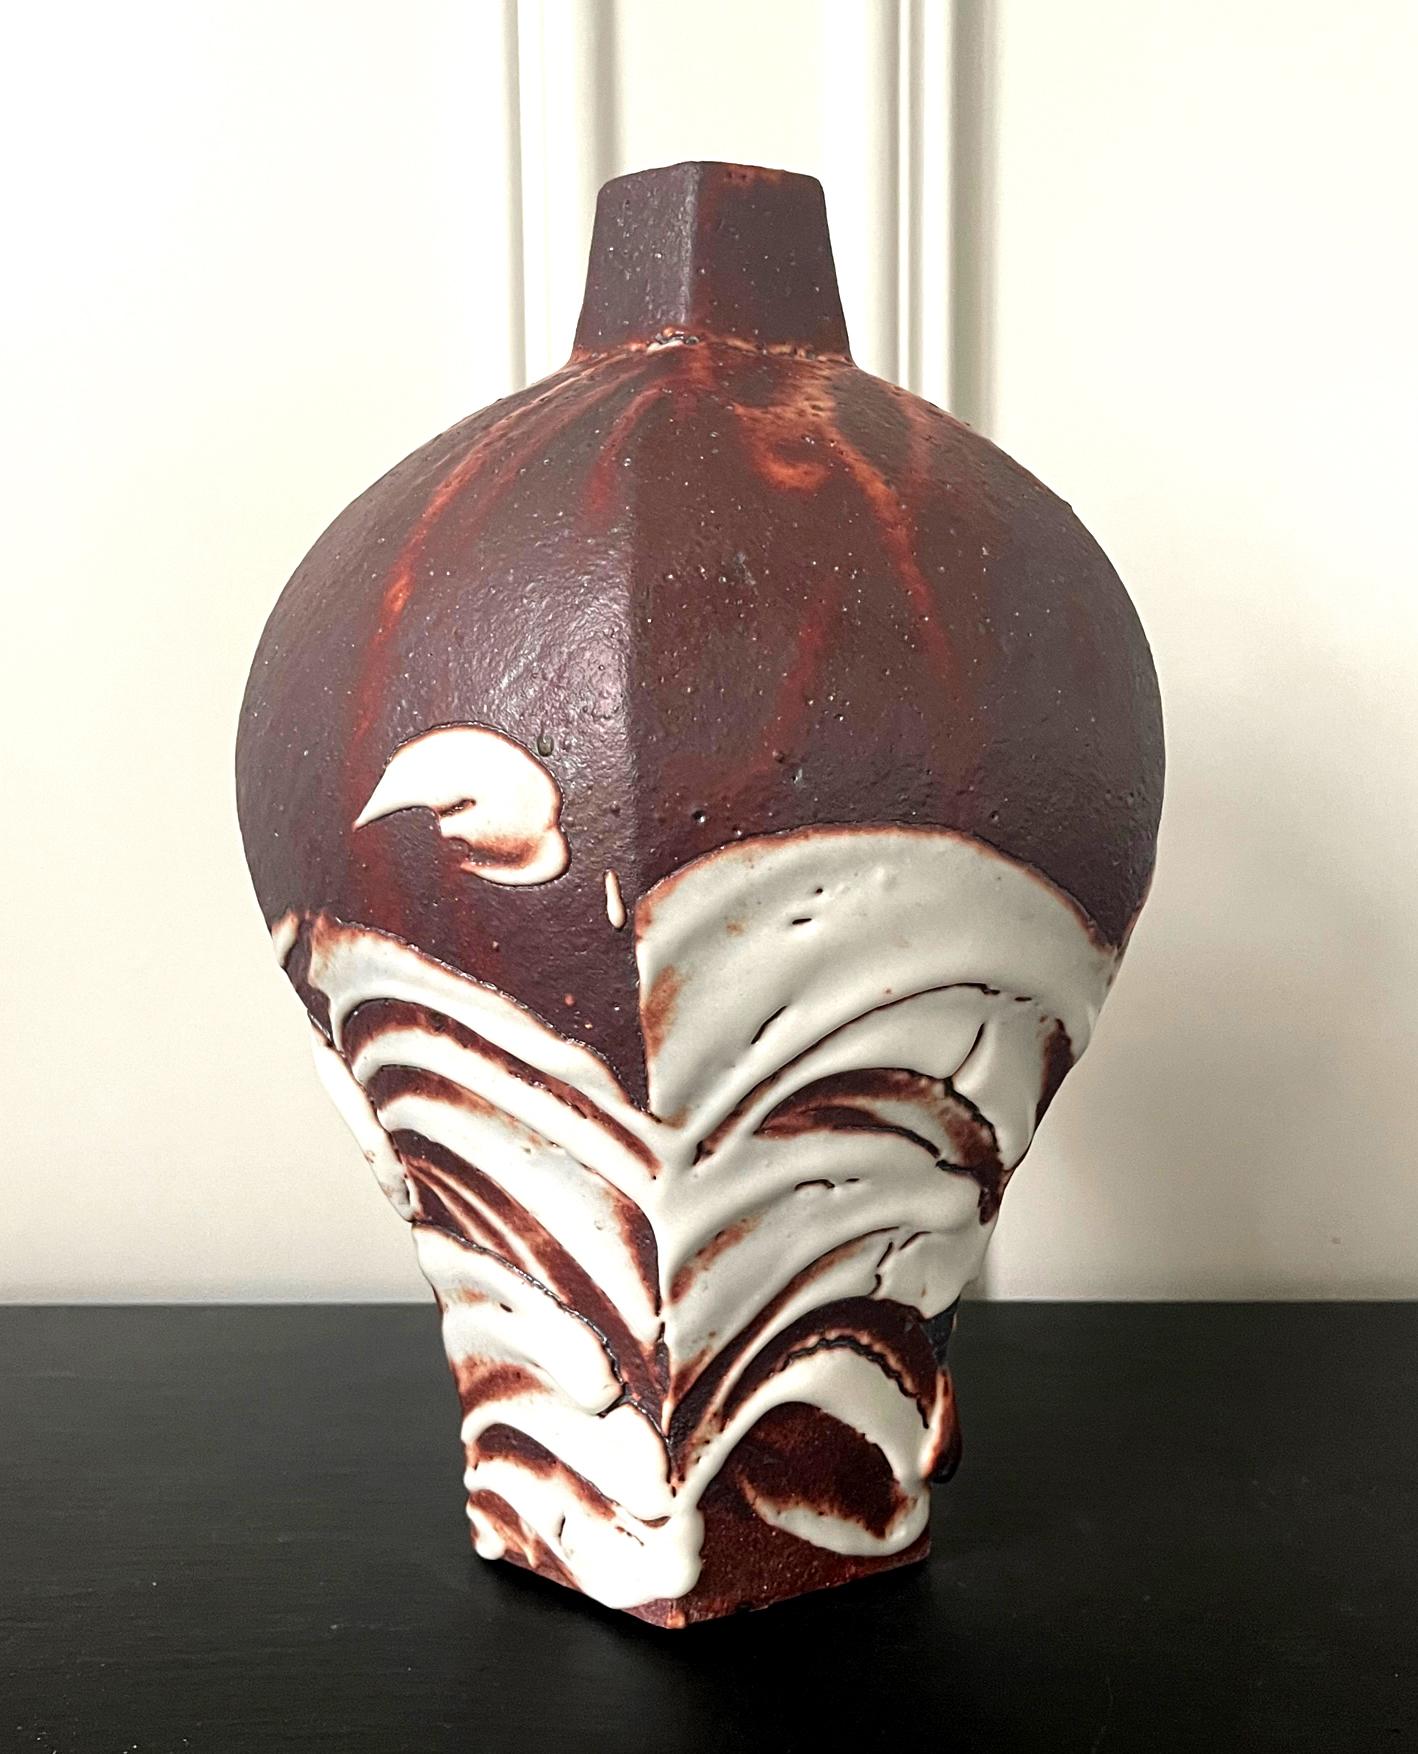 Un impressionnant vase en forme de bouteille en grès par le potier contemporain japonais Ken Matsuzaki (1950-) vers les années 2010. La forme solide s'inspire du vase à prunes traditionnel chinois (Meiping) avec une épaule surélevée et gonflée et